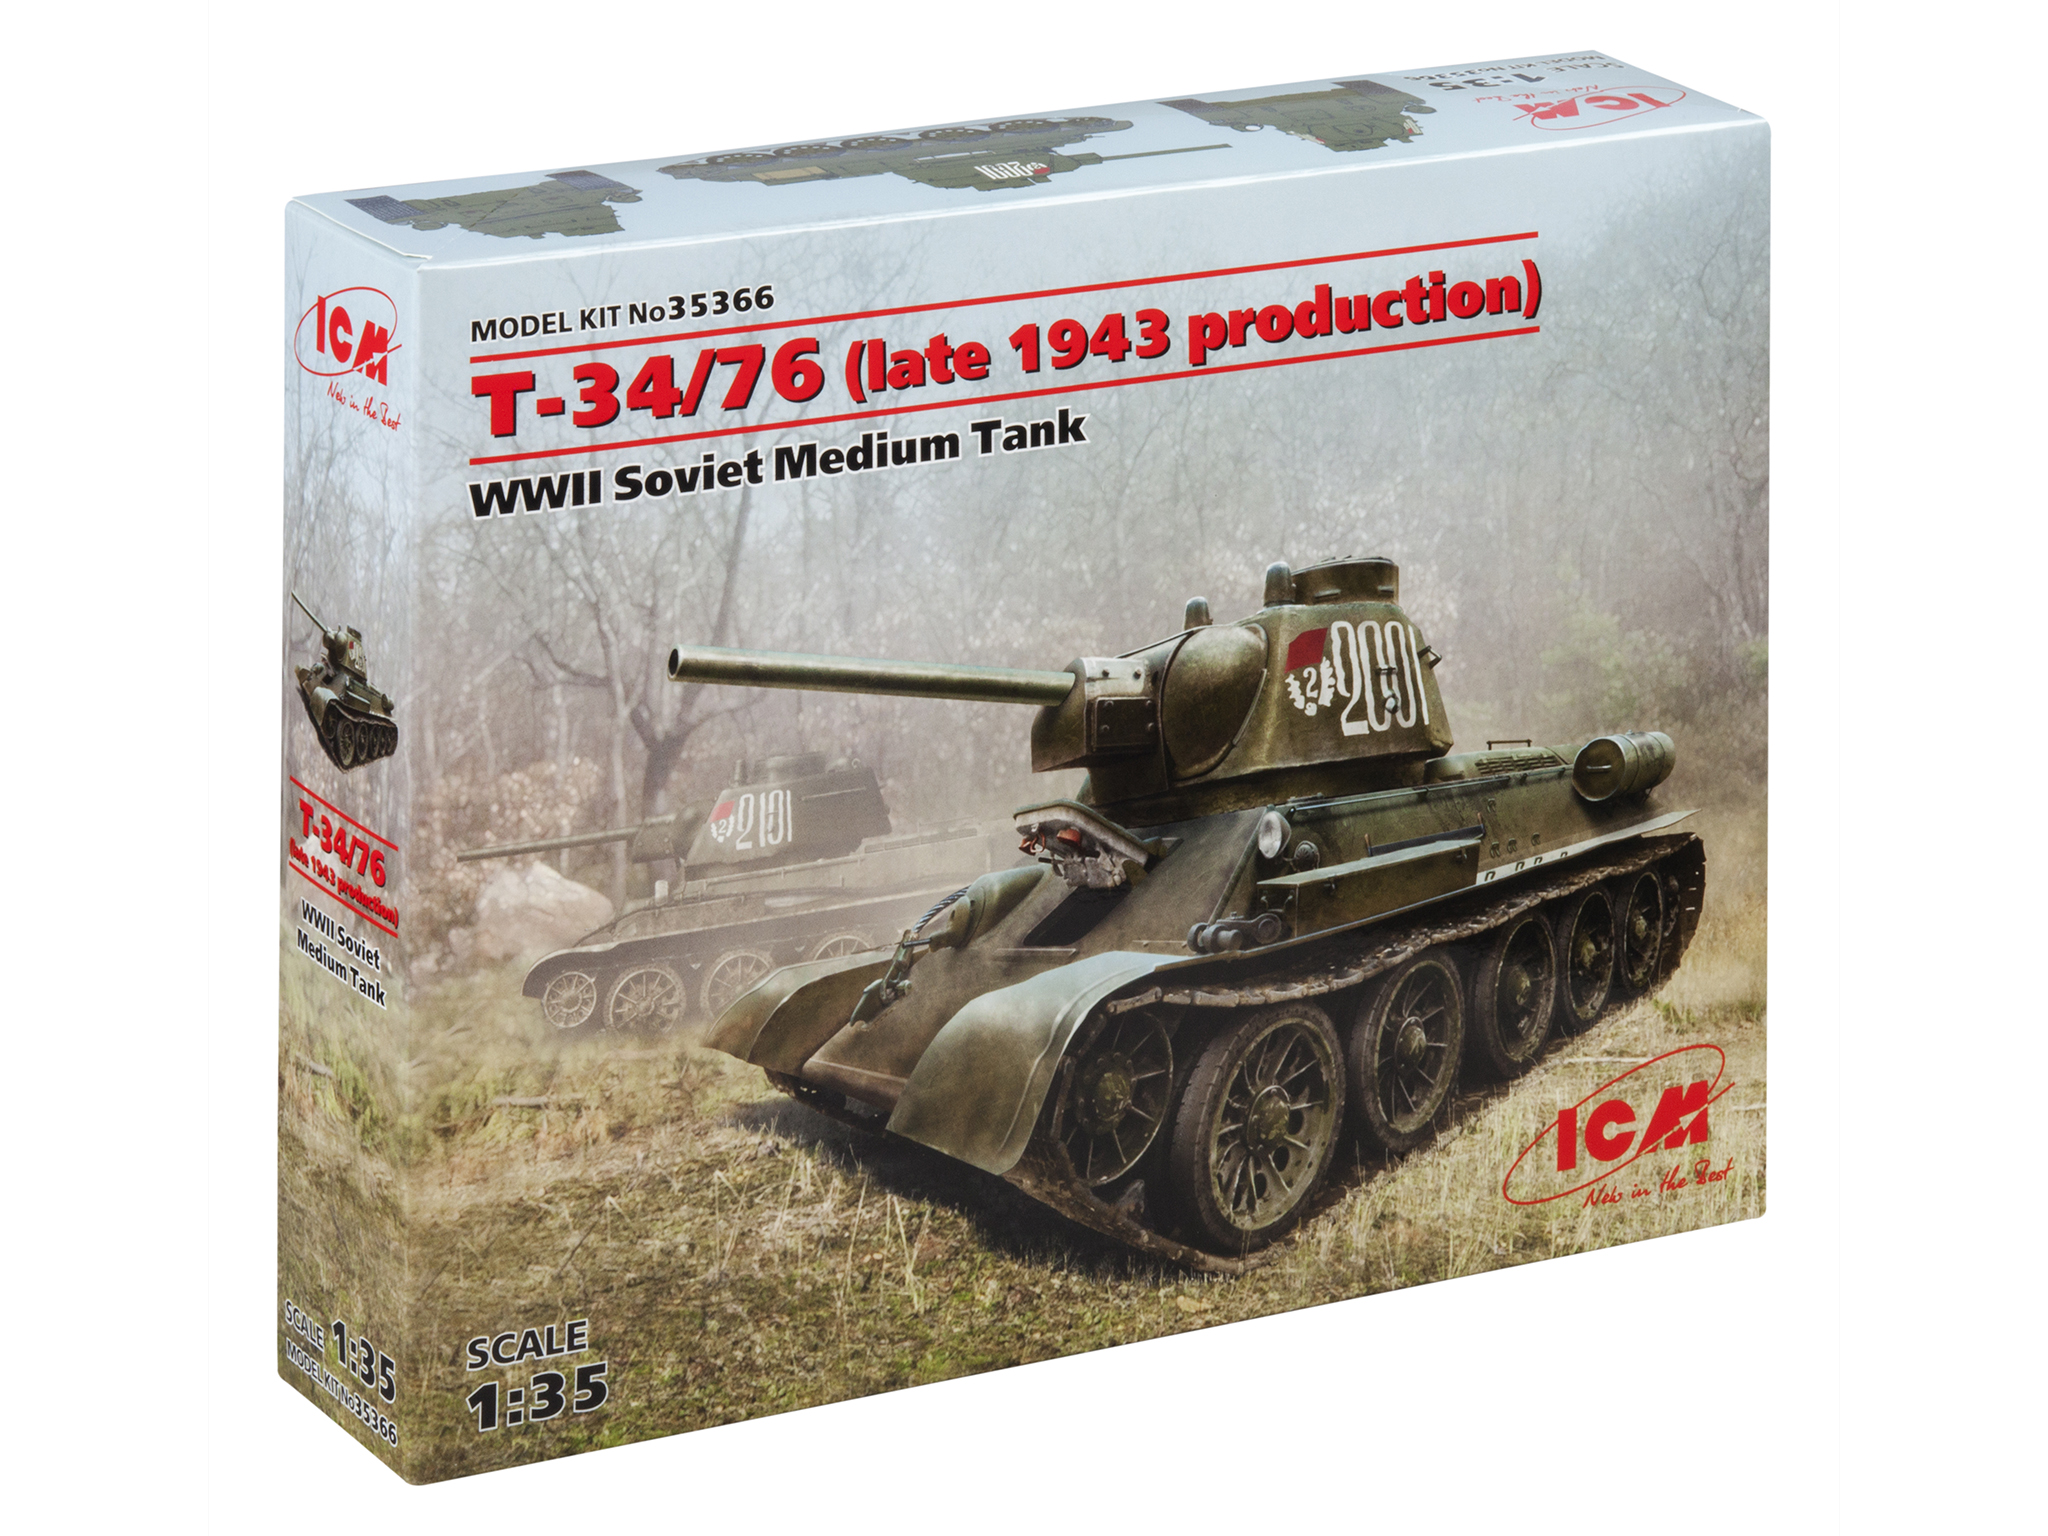 фото Сборная модель icm 1/35 советск средн танк ii мировой войны т-34/76 конца 1943 года 35366